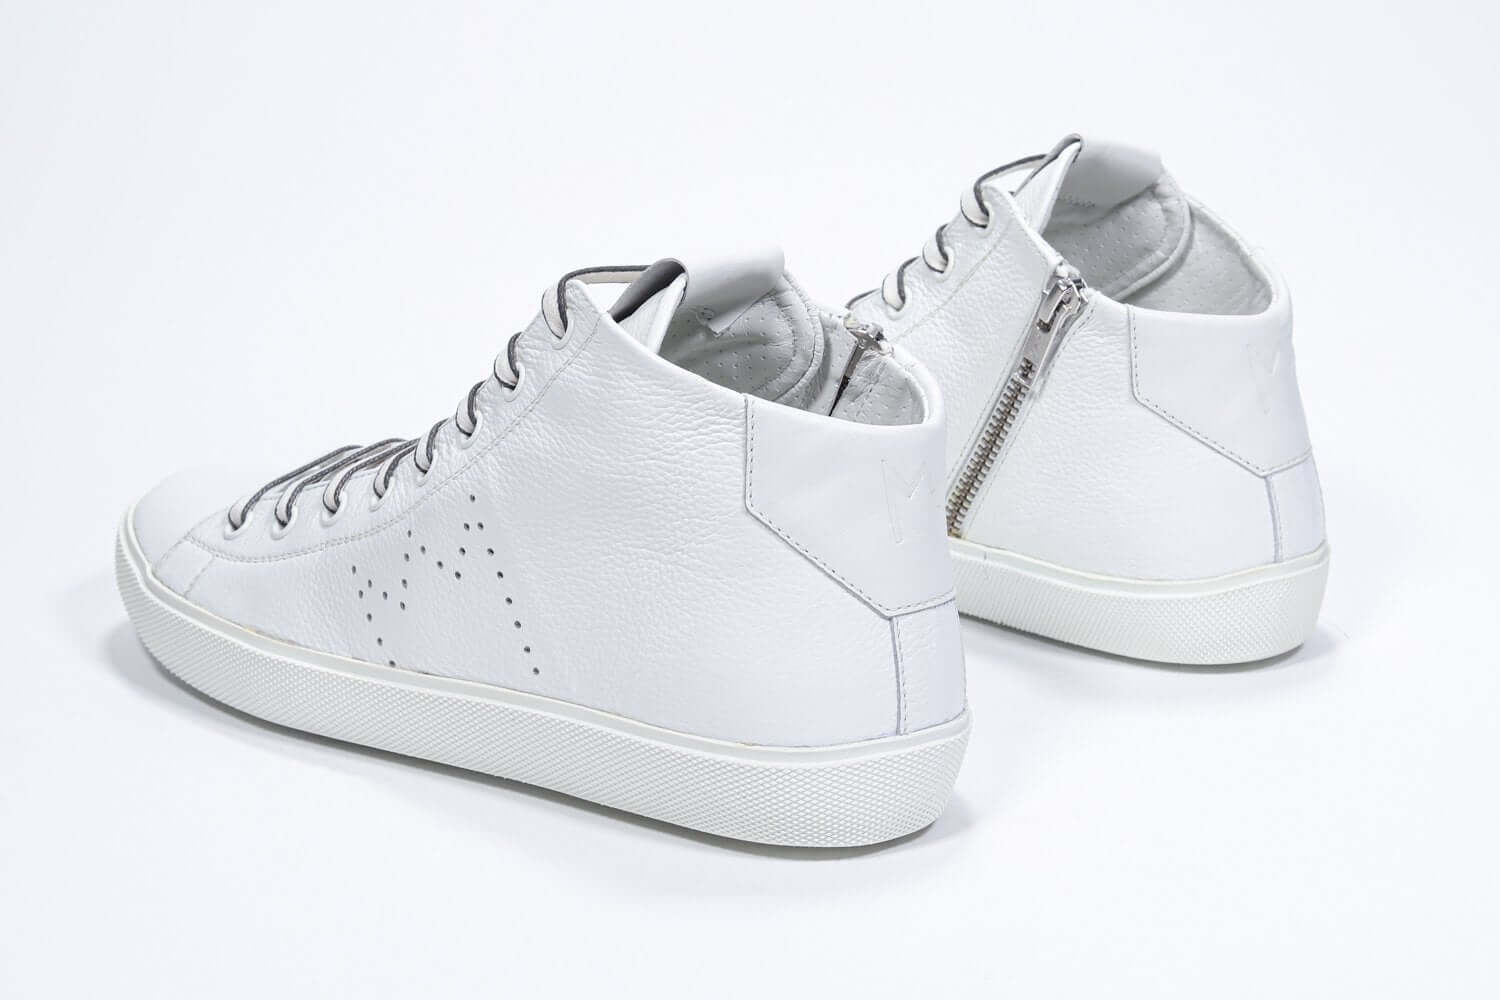 Vue de trois quarts arrière de la chaussure blanche de taille moyenne sneaker , avec une tige en cuir, un logo perforé, une semelle blanche et une fermeture à glissière interne.